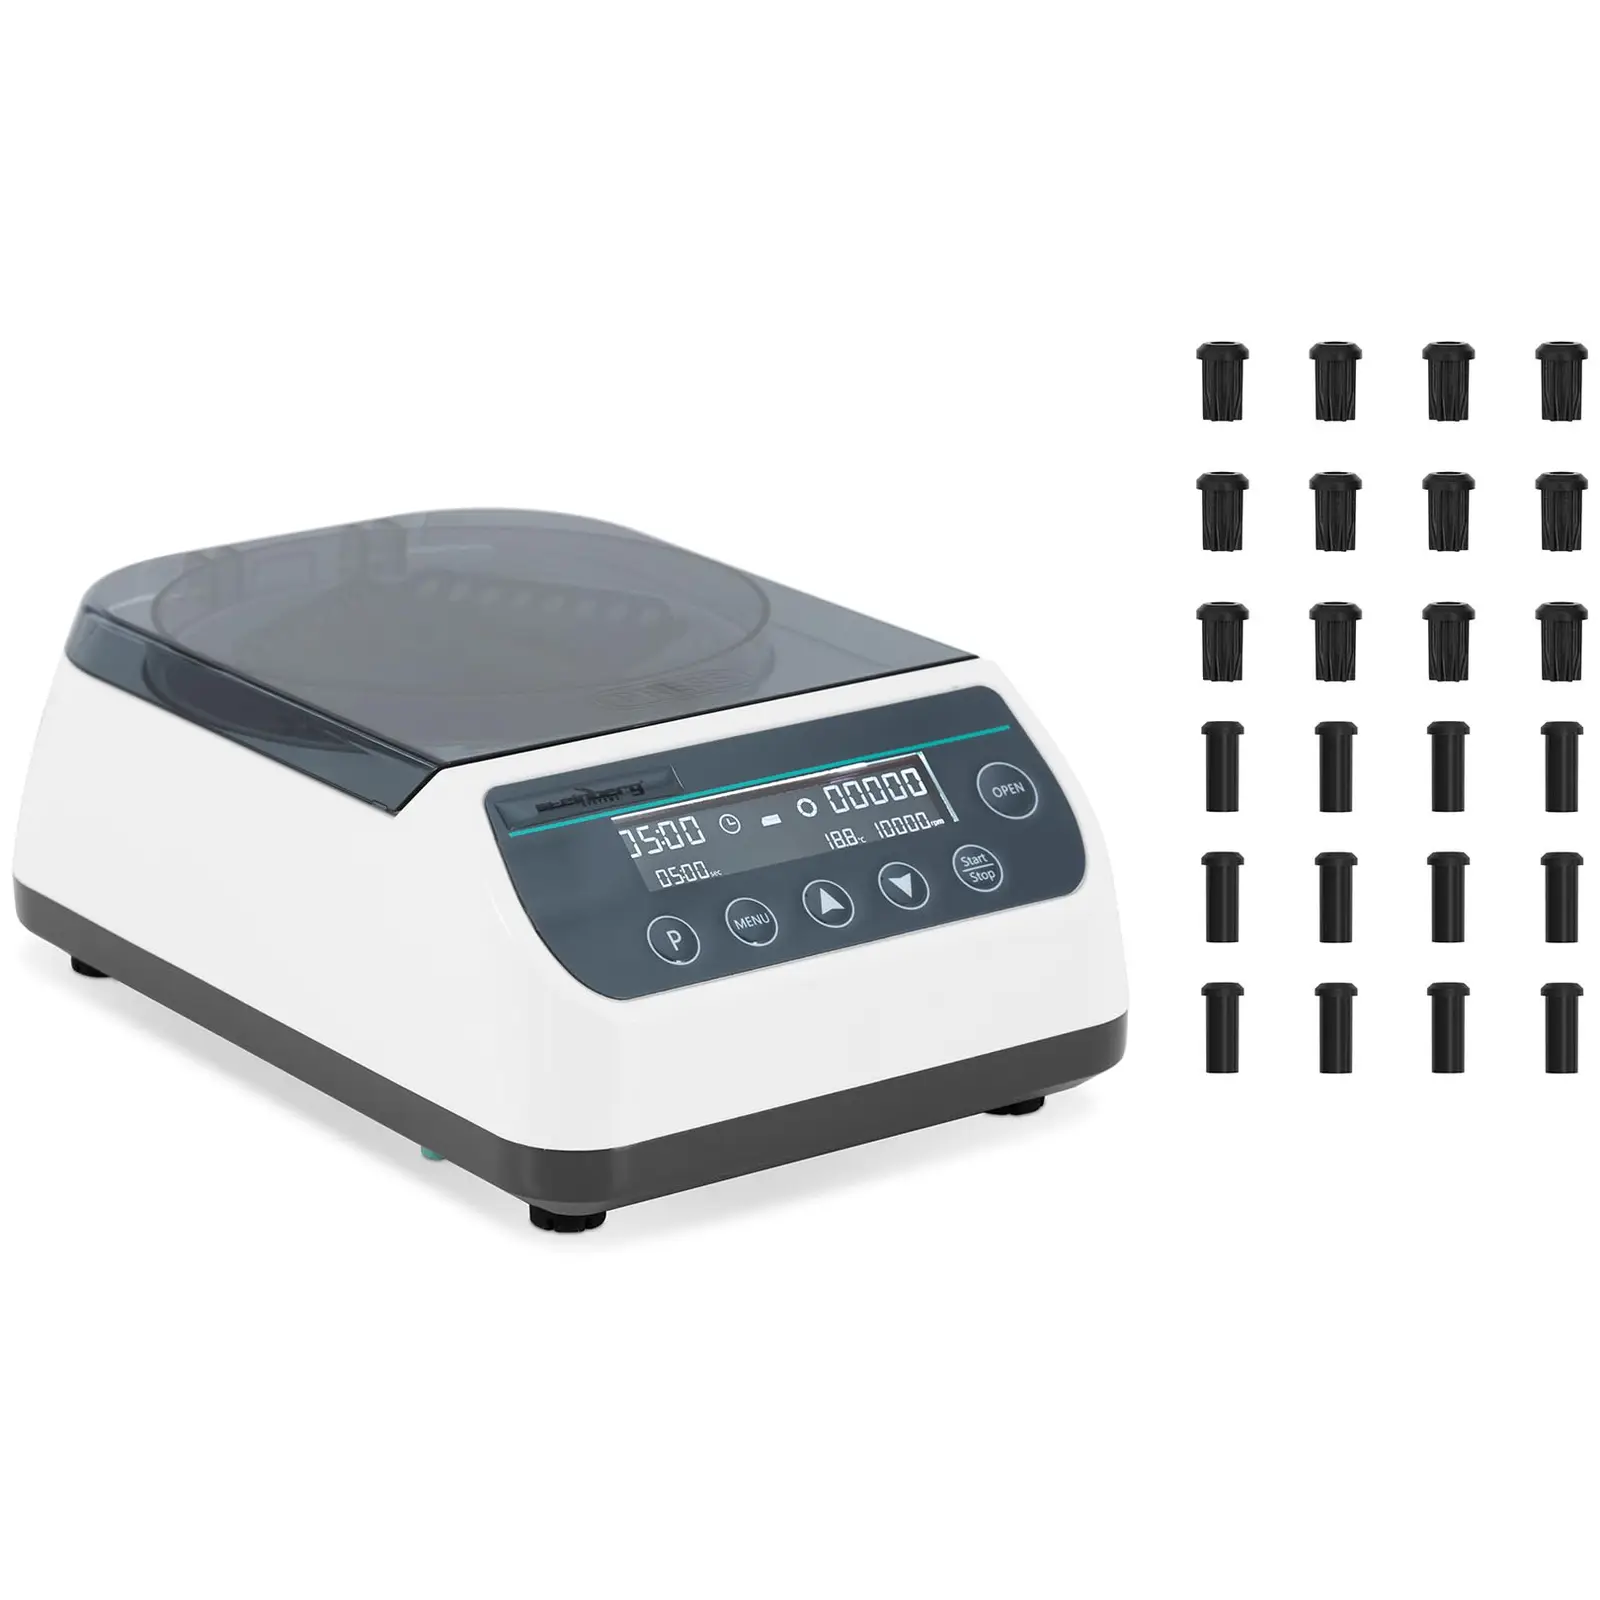 Stolní odstředivka - Vysokorychlostní - Rotor 2 v 1 -  otáček za minutu - pro {{max_number_of_tube_570}} zkumavky / 4 PCR proužky - RZB 6708 xg